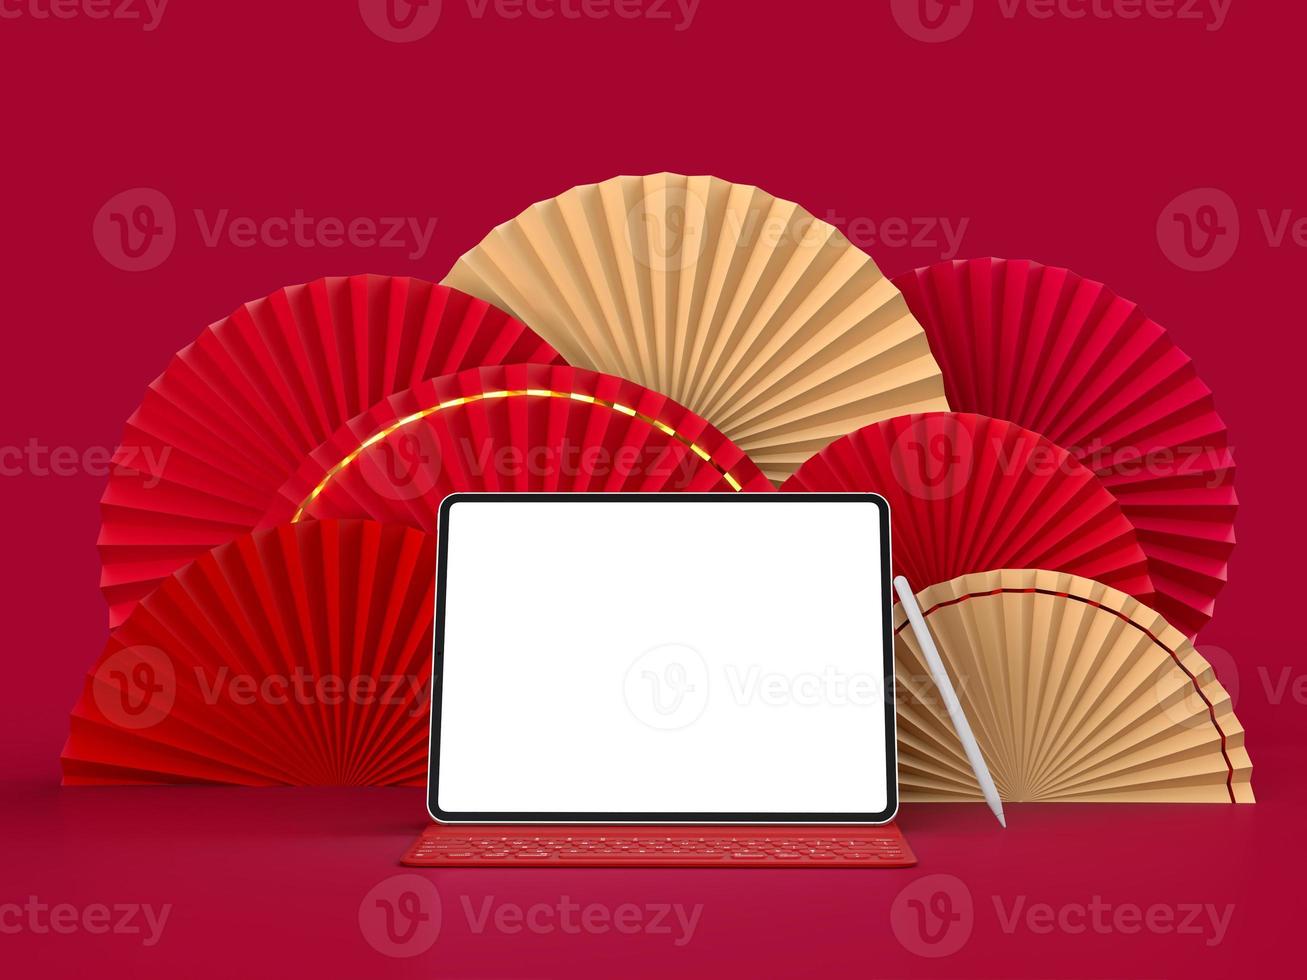 medalhão 3d do ventilador de papel para o ano novo chinês com tablet isolado foto